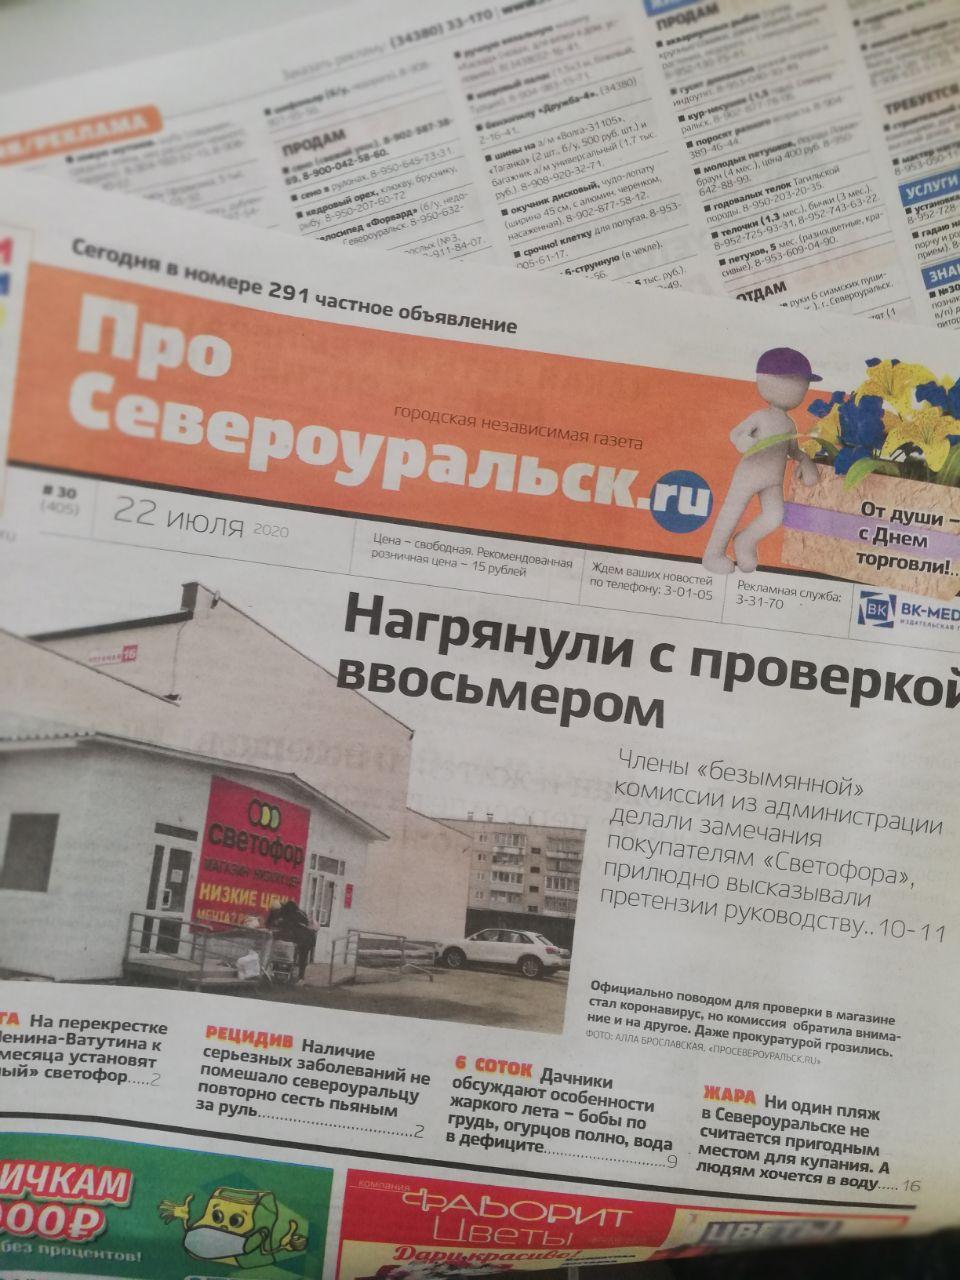 Объявления из газеты "ПроСевероуральск.ru" № 4 от 27 января 2021 года